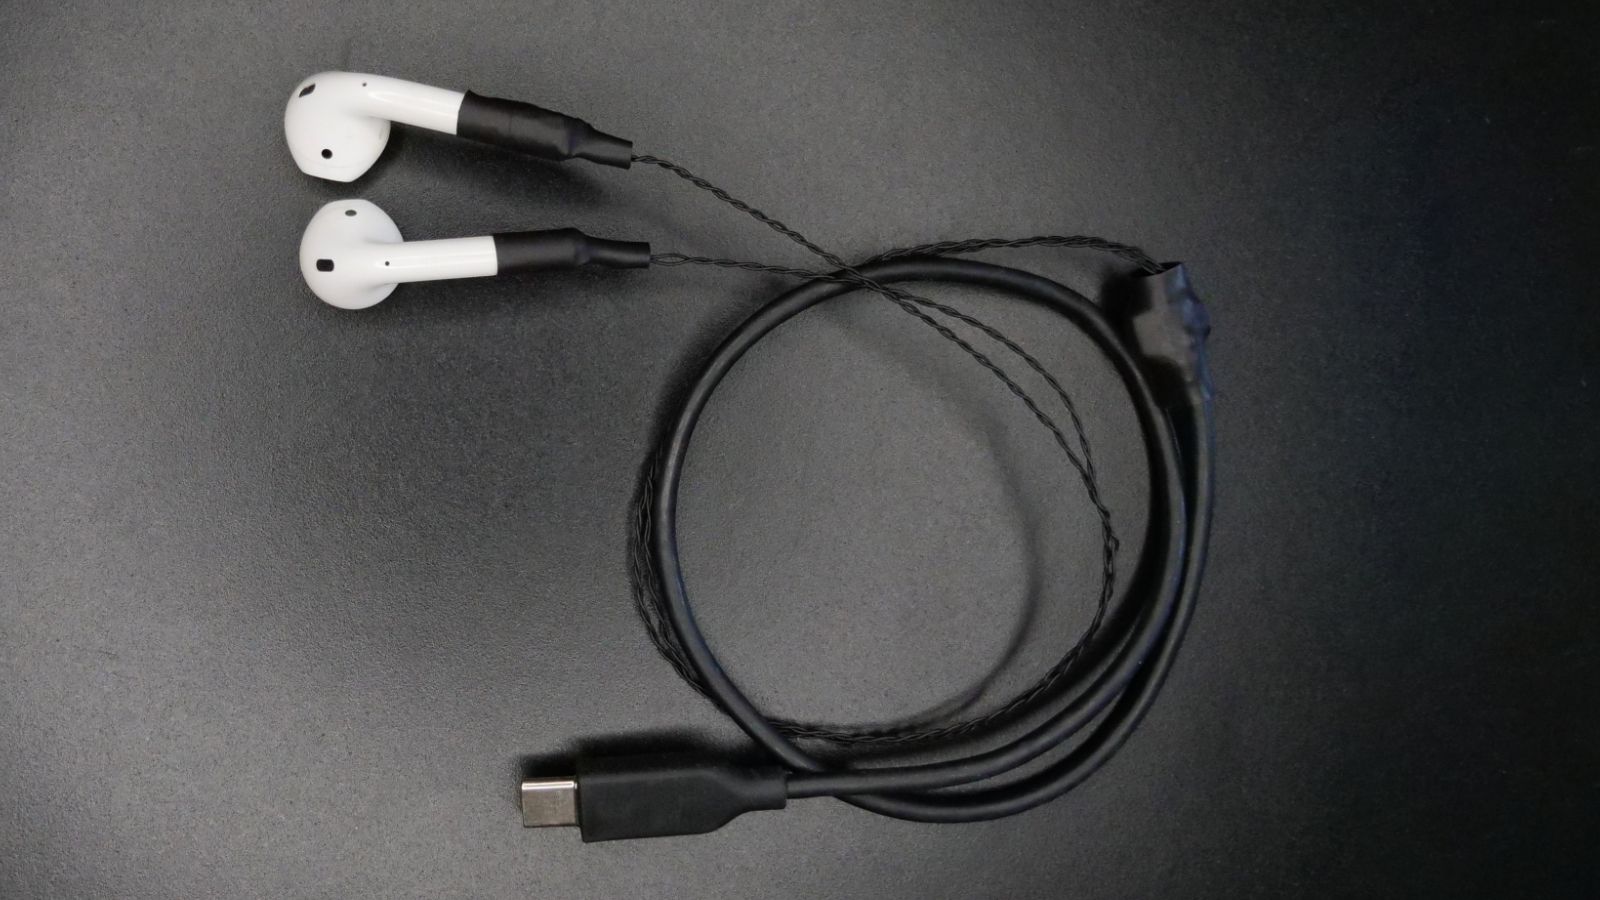 Mühendis, AirPod’lara kablolar ve bir USB-C konektörü getiriyor